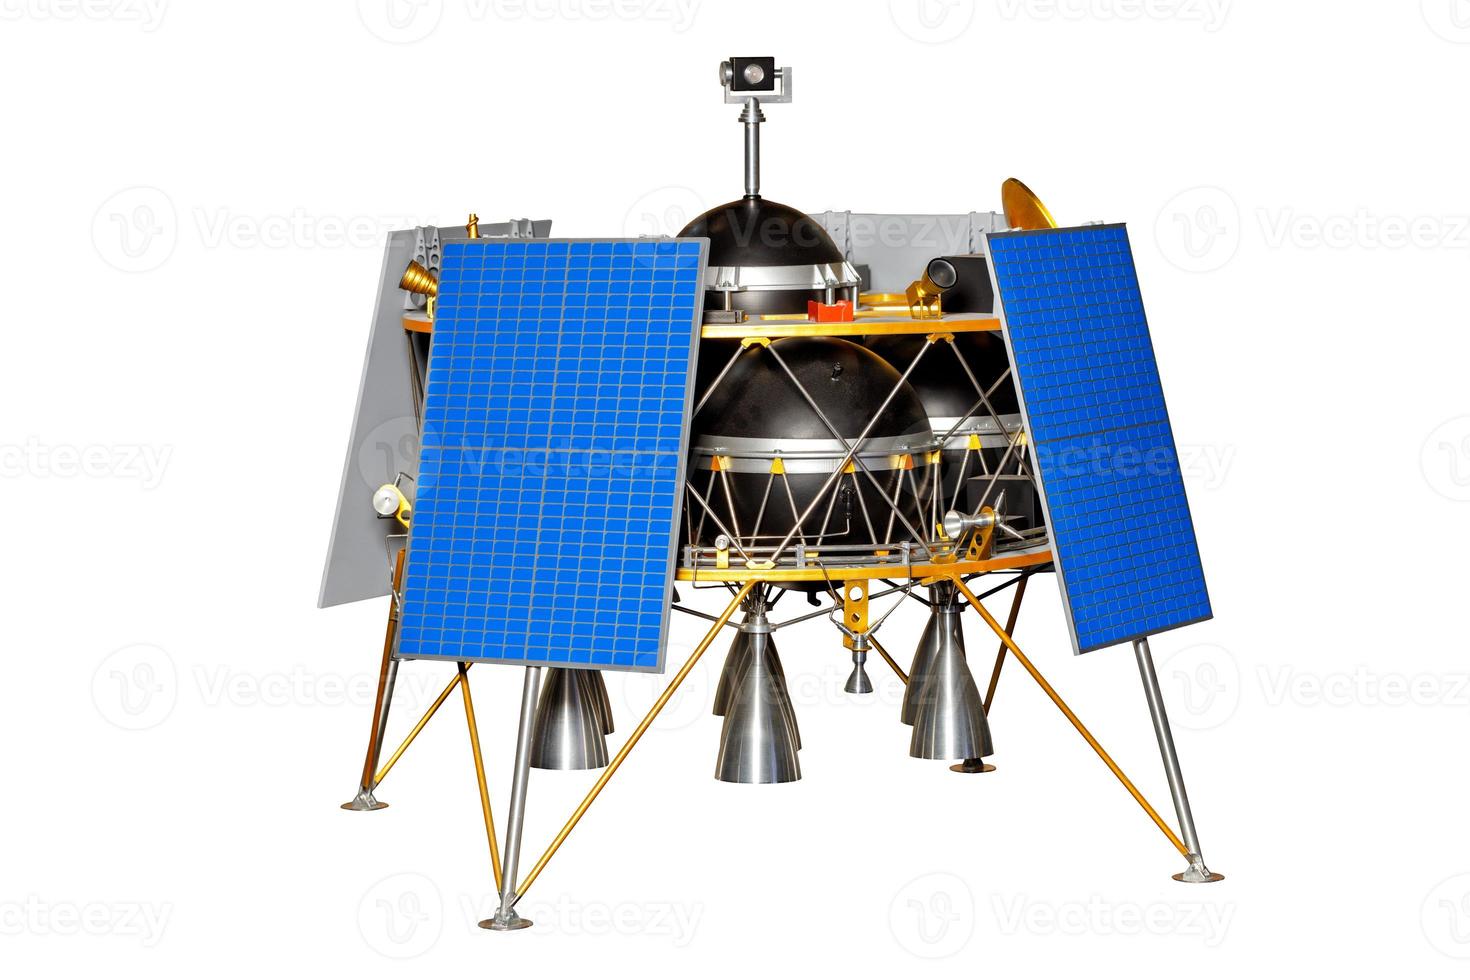 uma sonda lunar voadora para exploração da superfície lunar em vários lugares durante uma expedição. foto